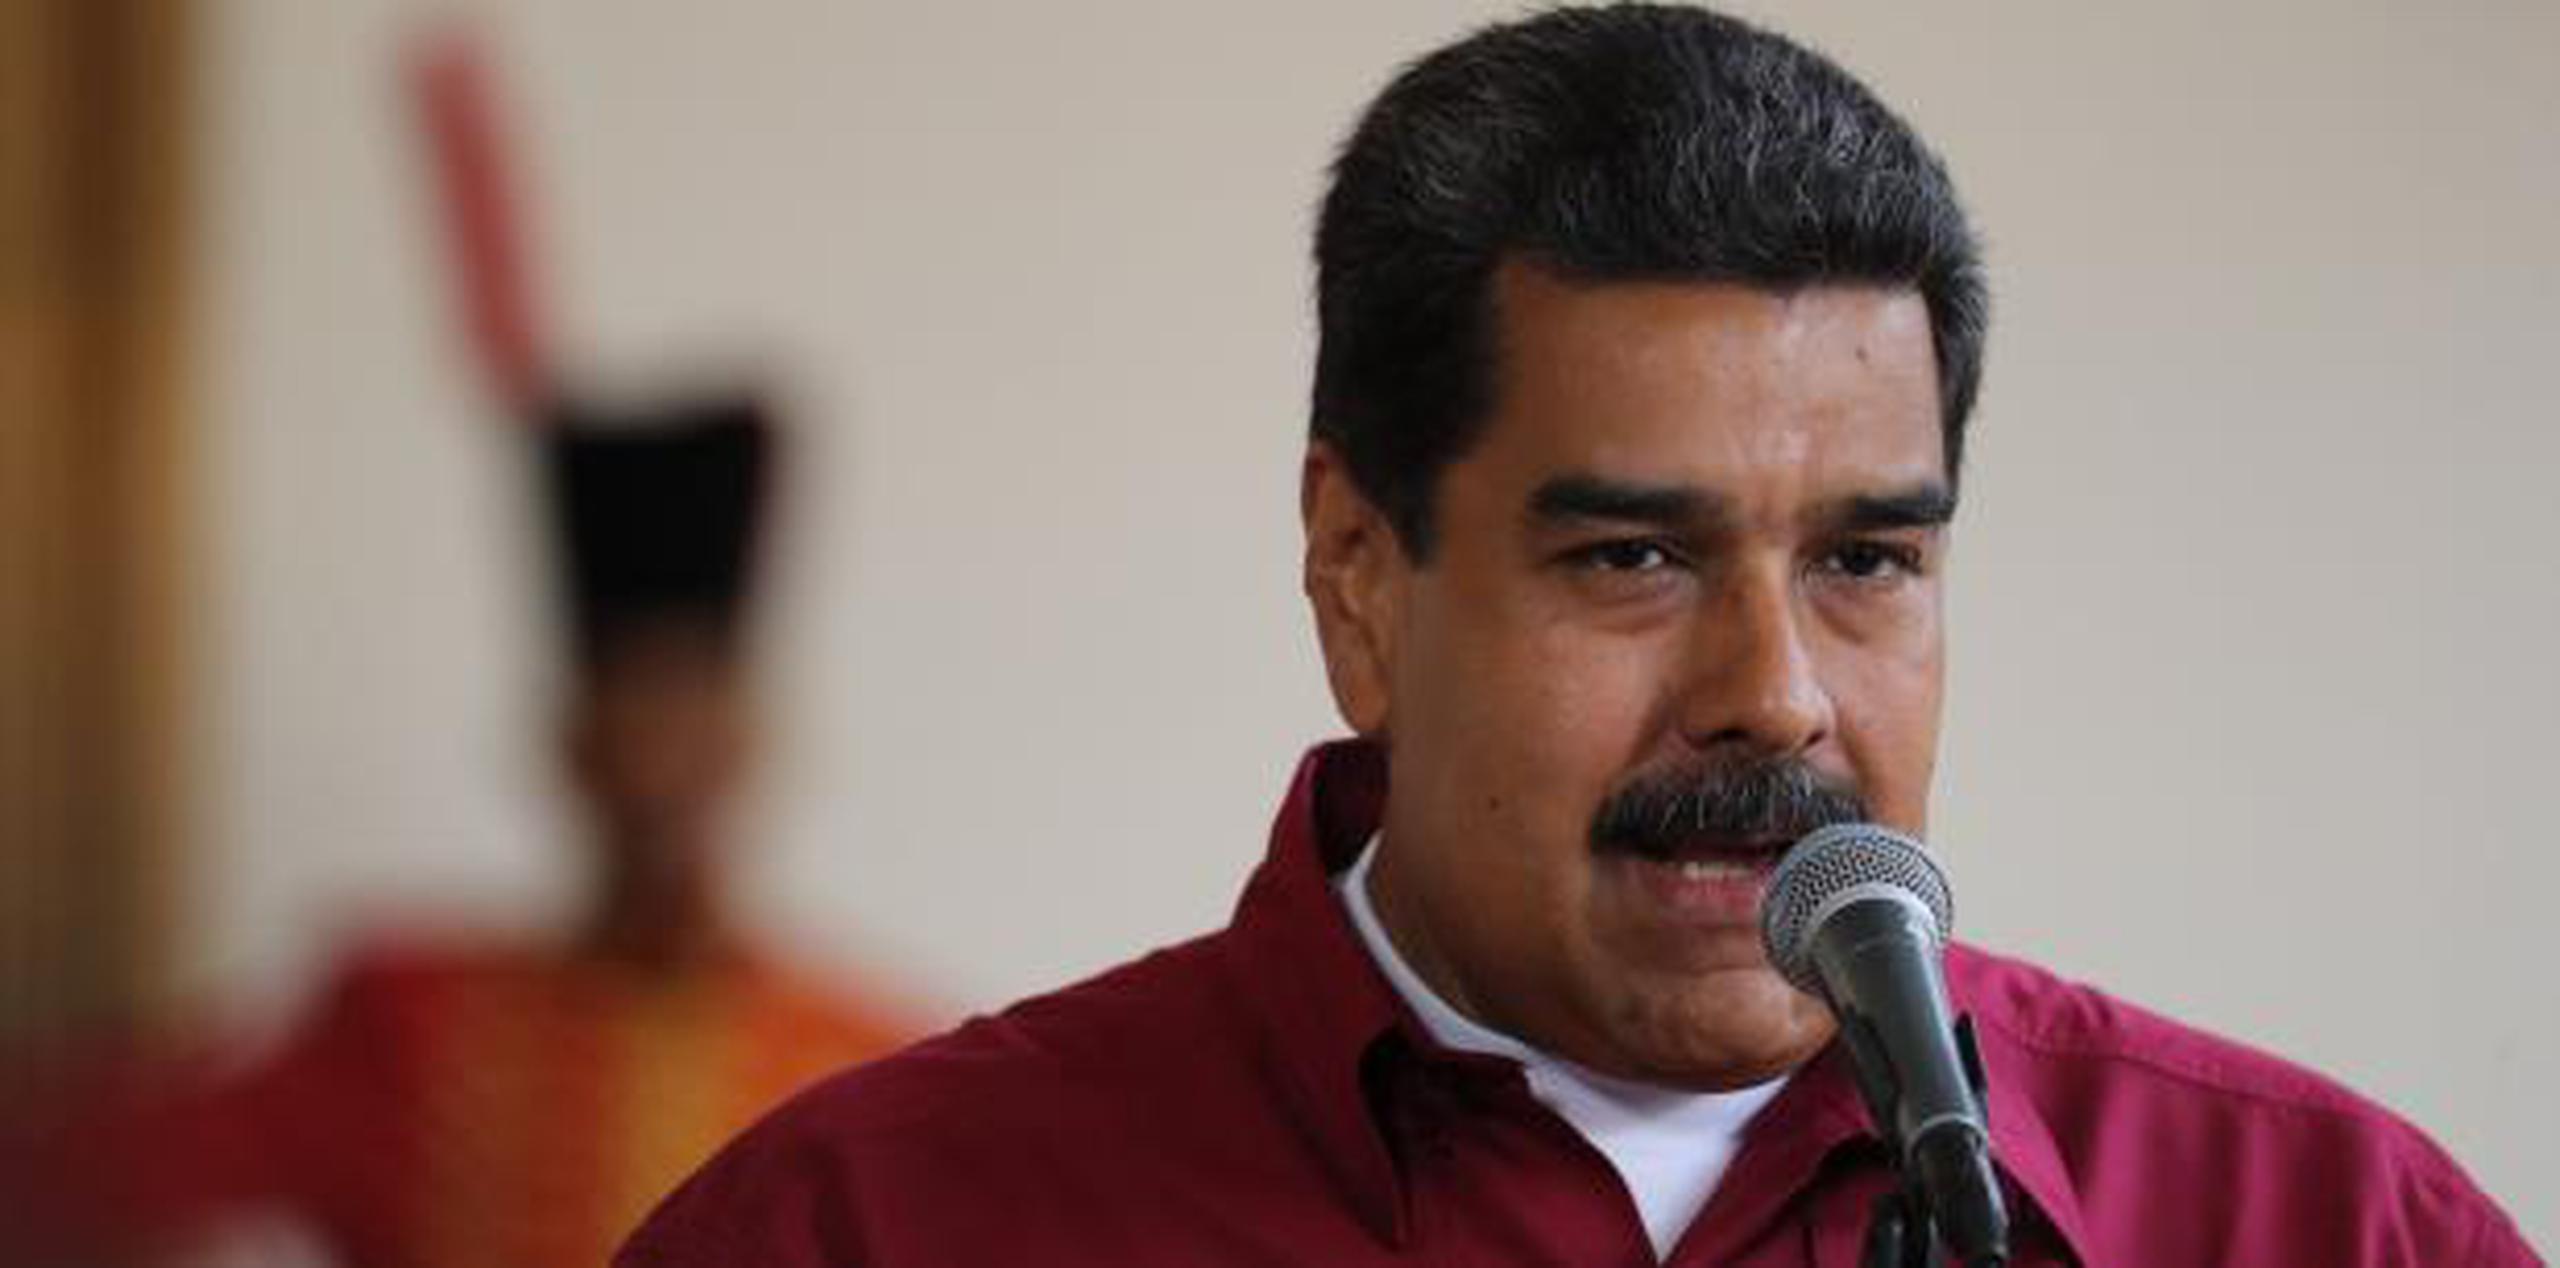 El presidente venezolano Nicolás Maduro habla durante una rueda de prensa en el Palacio de Miraflores en Caracas. (EFE)